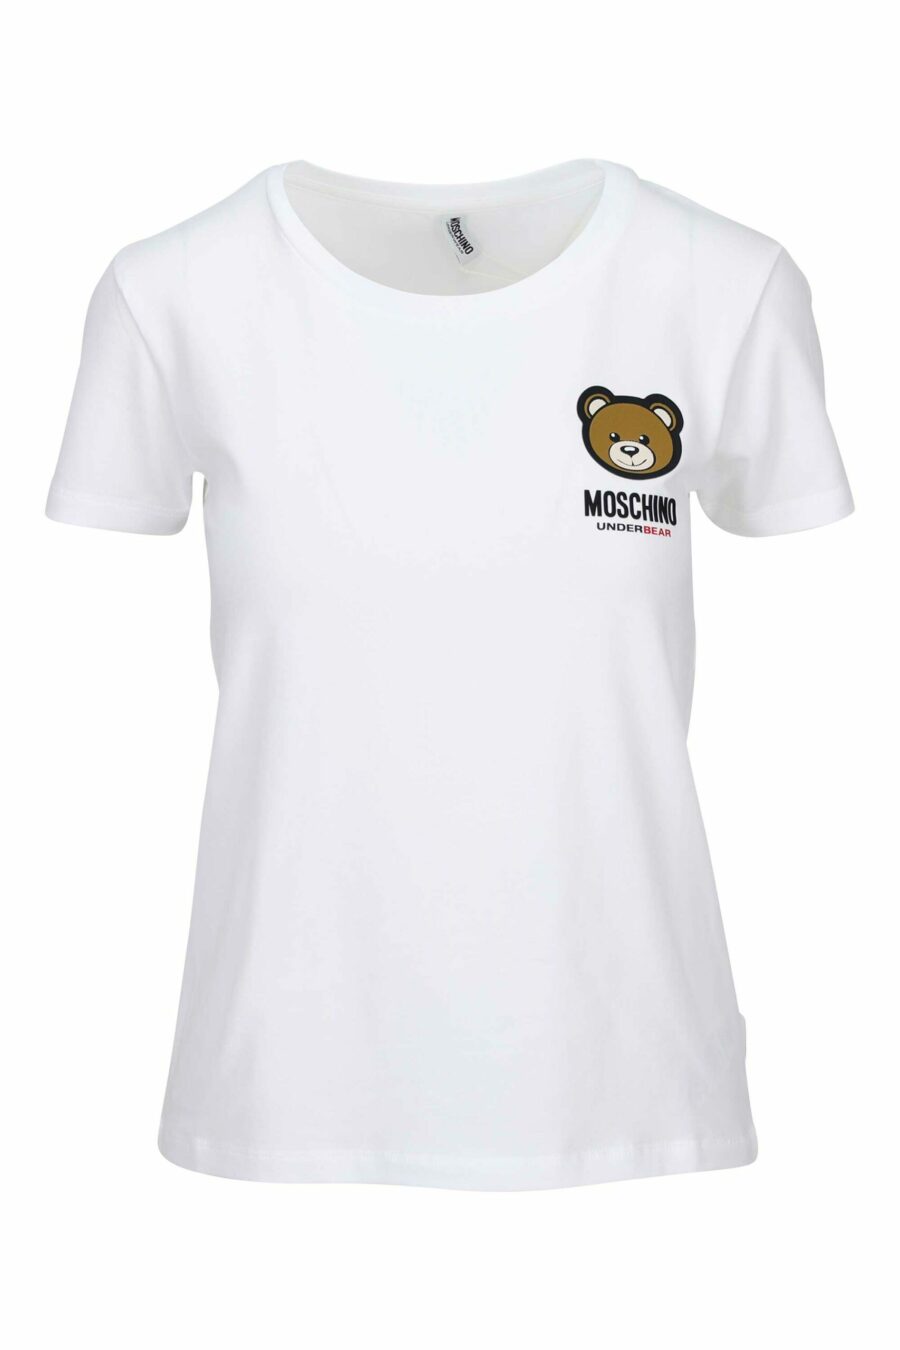 Weißes T-Shirt mit Logo-Bärenaufnäher "underbear" - 889316618488 skaliert